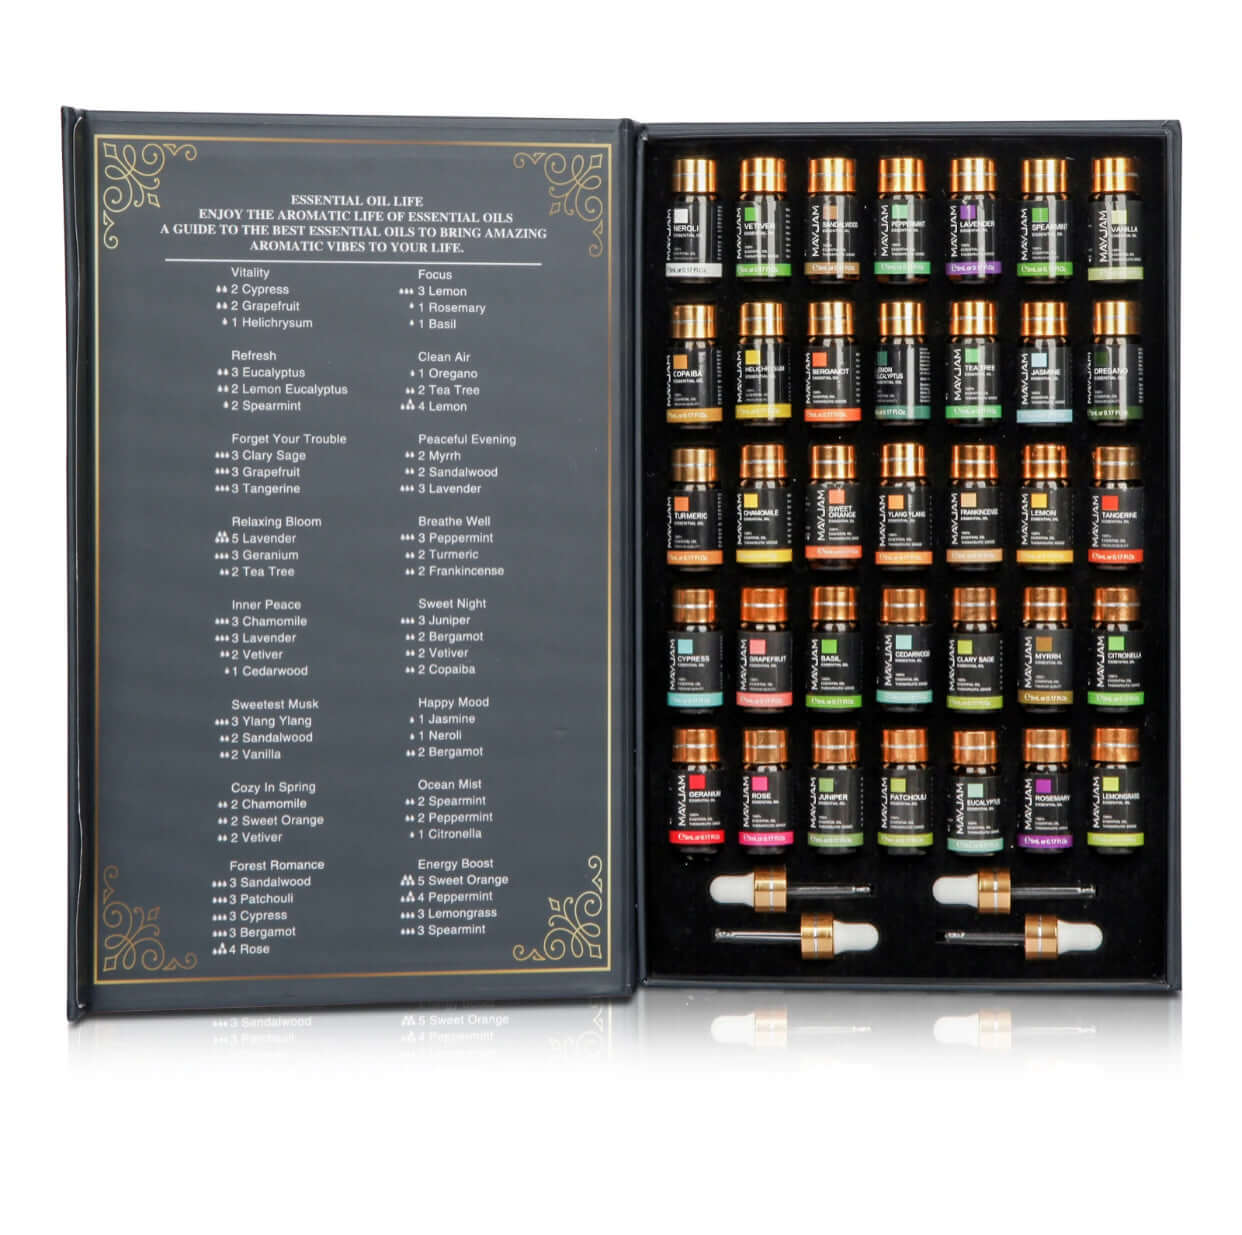 Set de aceites esenciales MAYJAM - 35 botellas como set de regalo - para humidificadores, difusores, perfumes caseros y mucho más